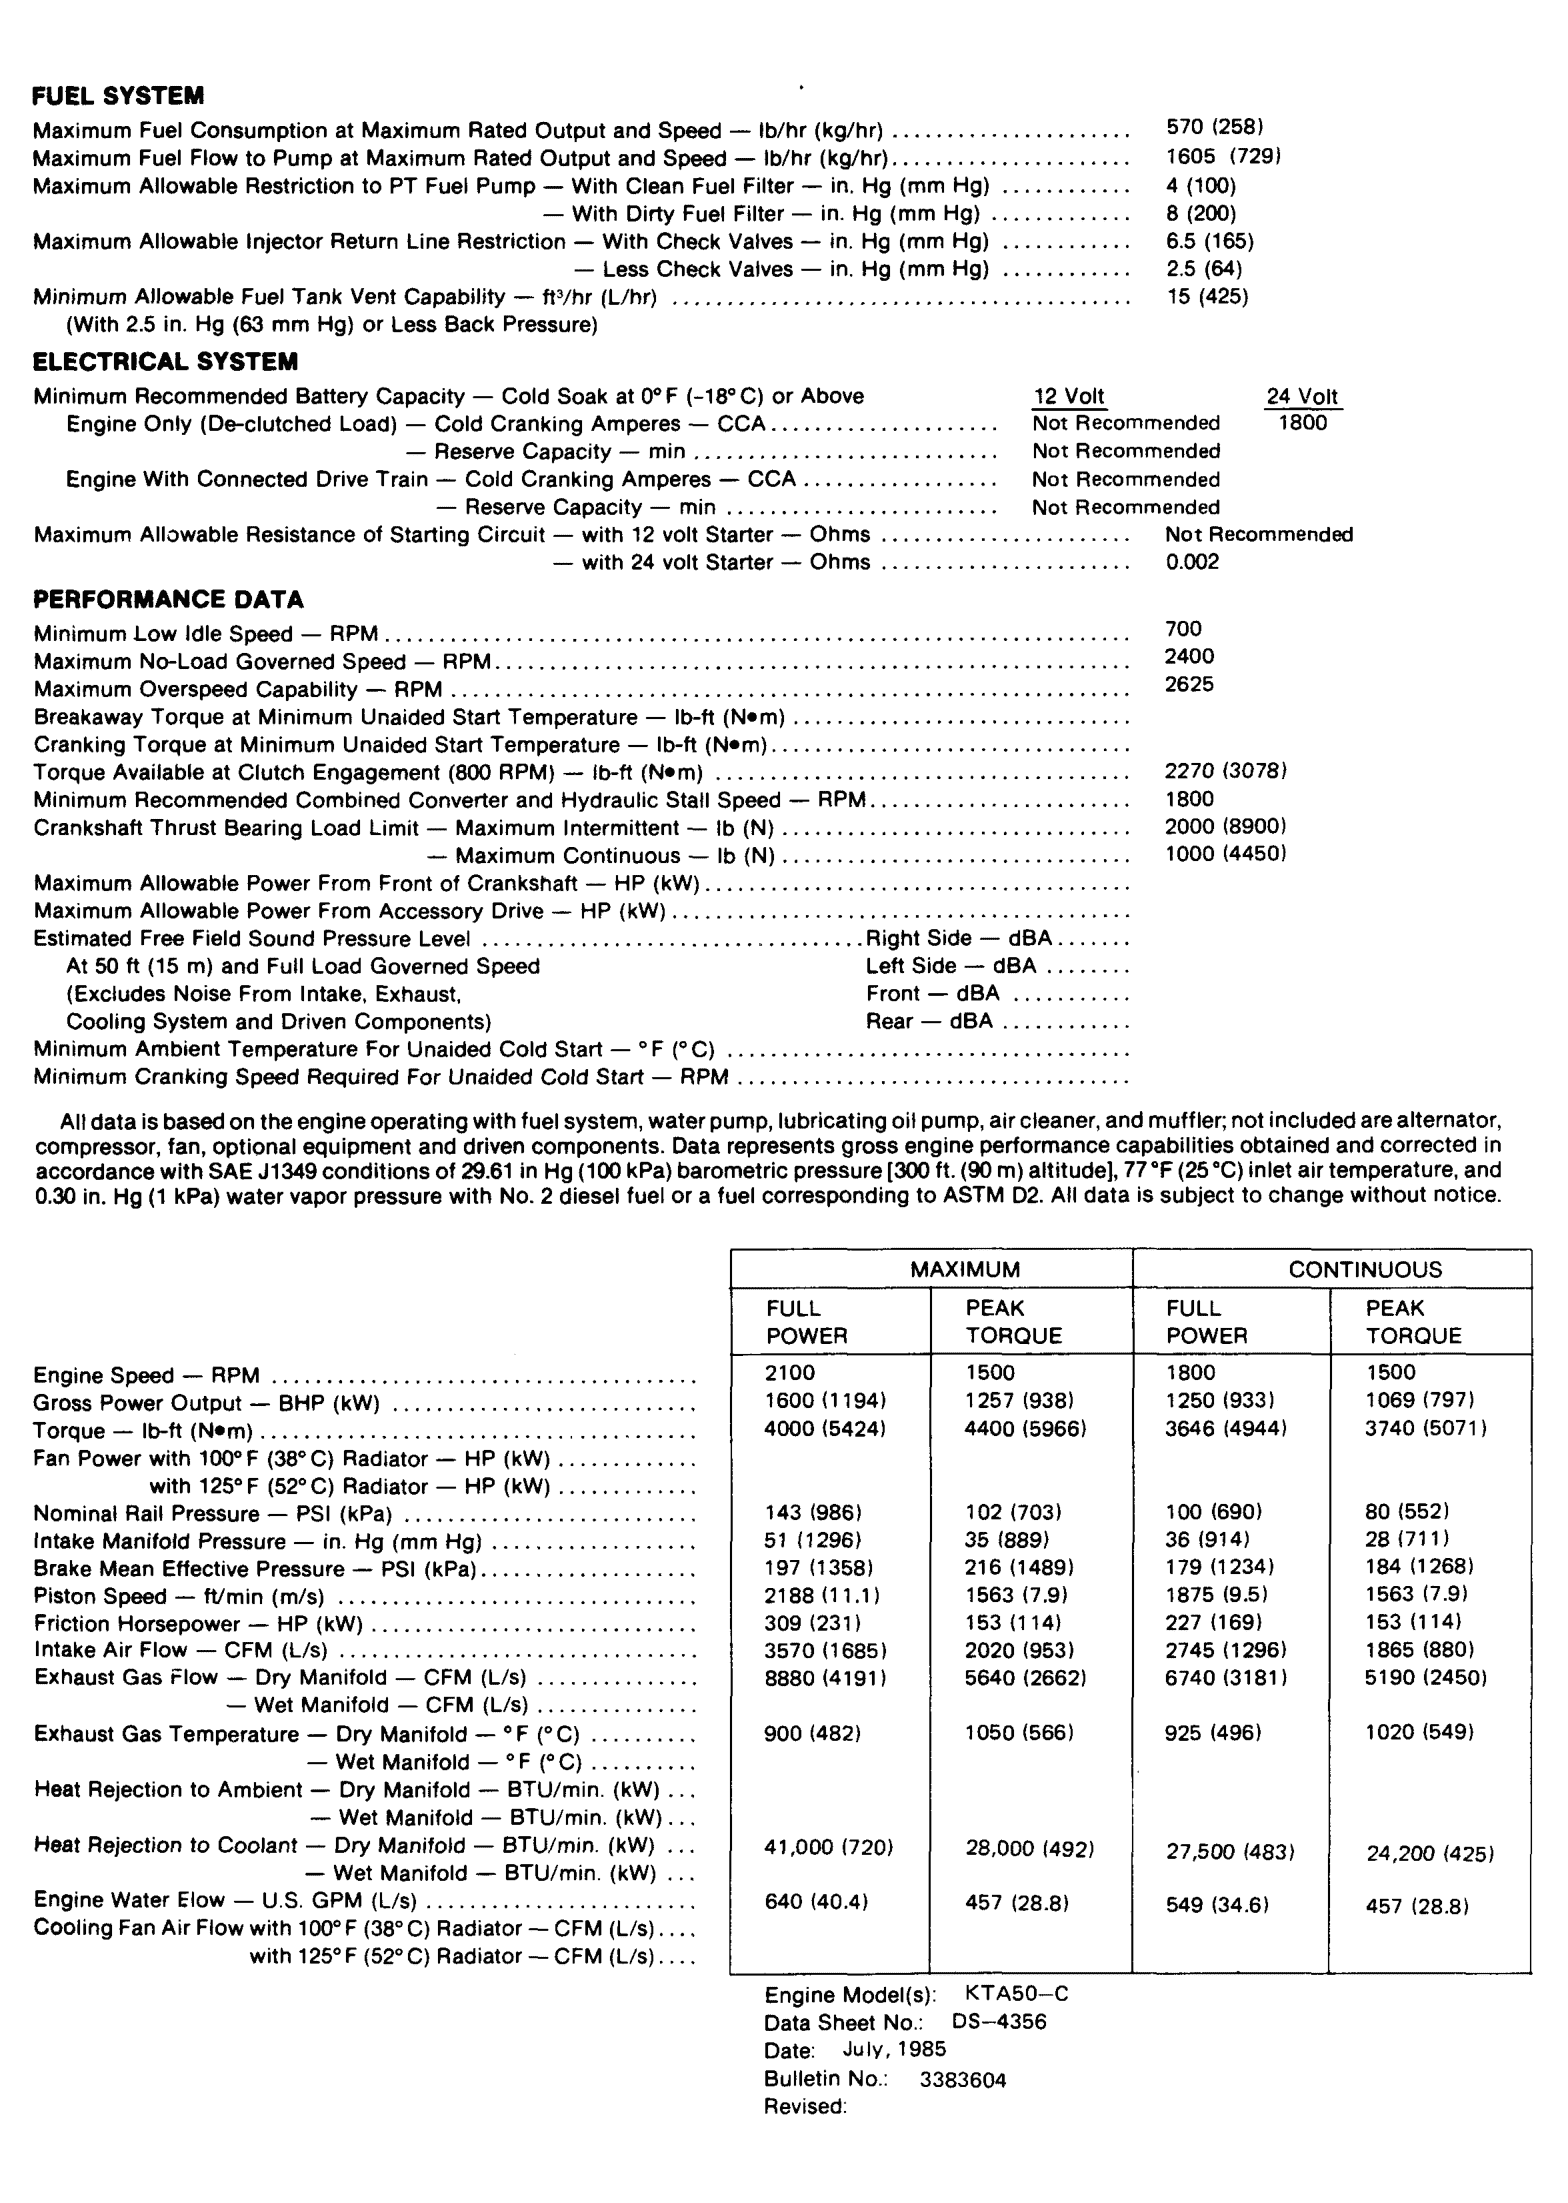 Cummins KTA50-C1600 datasheet